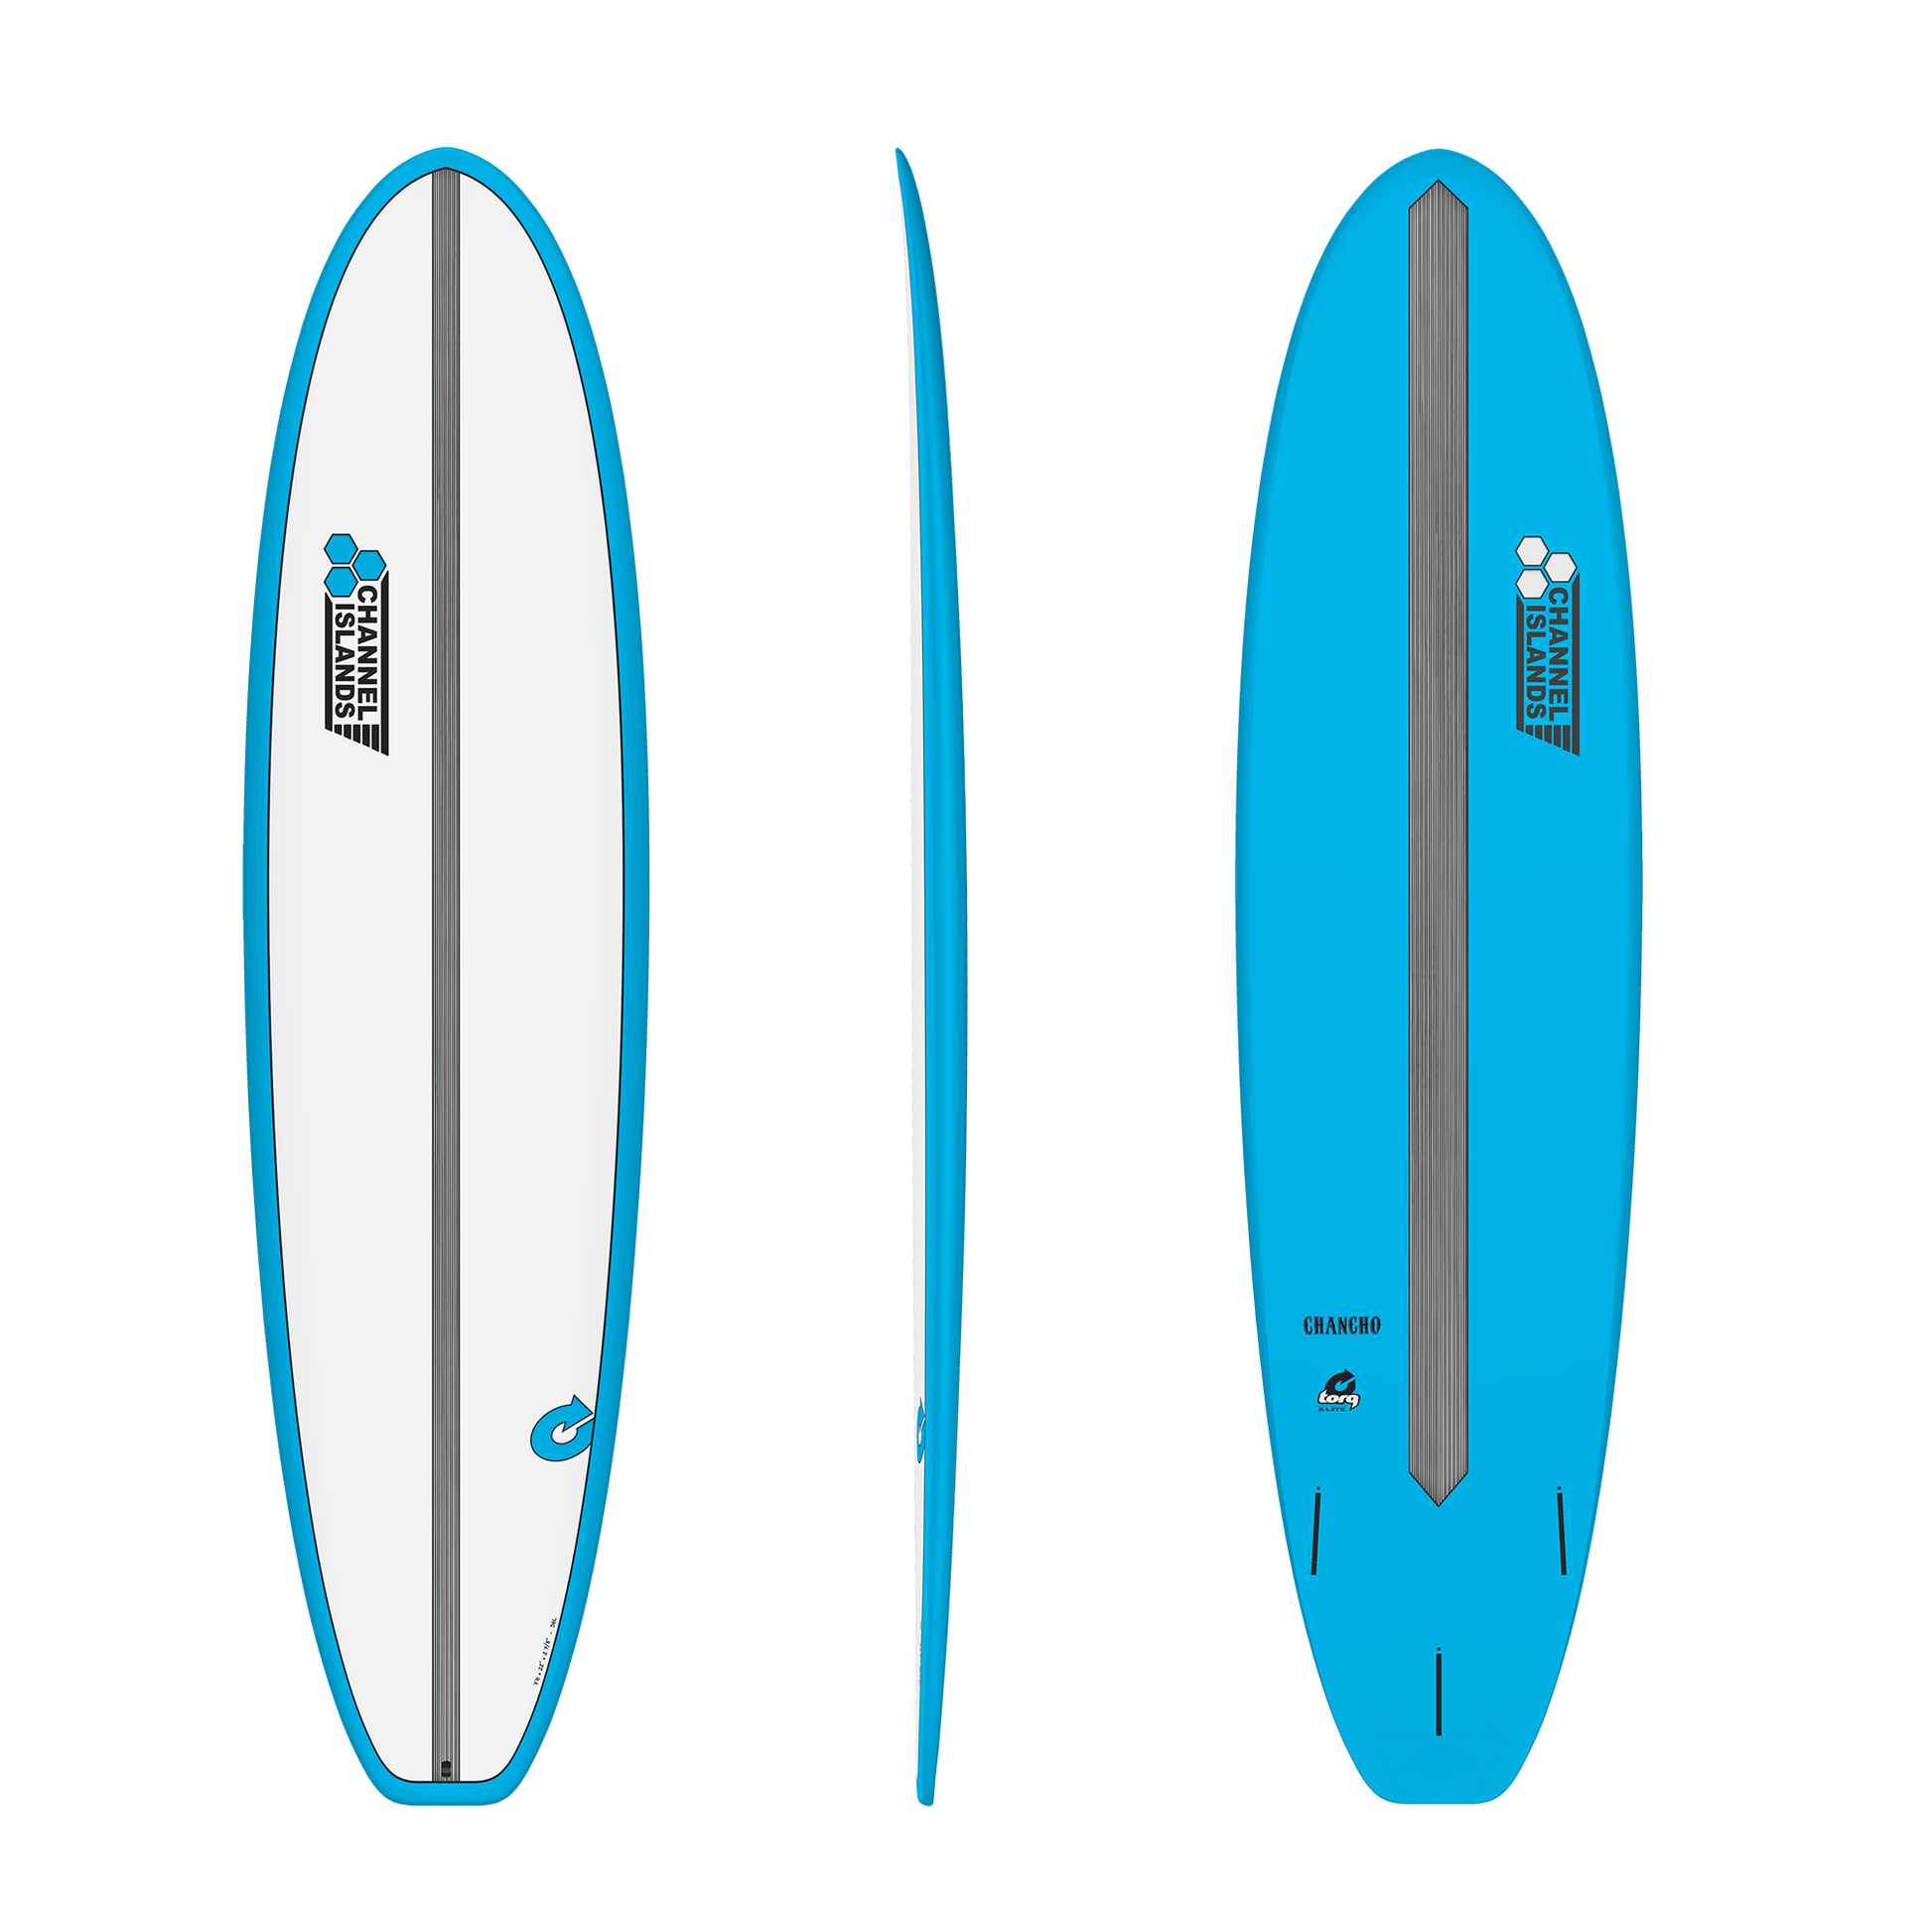 Channel Islands 7'6" Al Merrick Chancho Torq Surfboard - Blue Surfboard